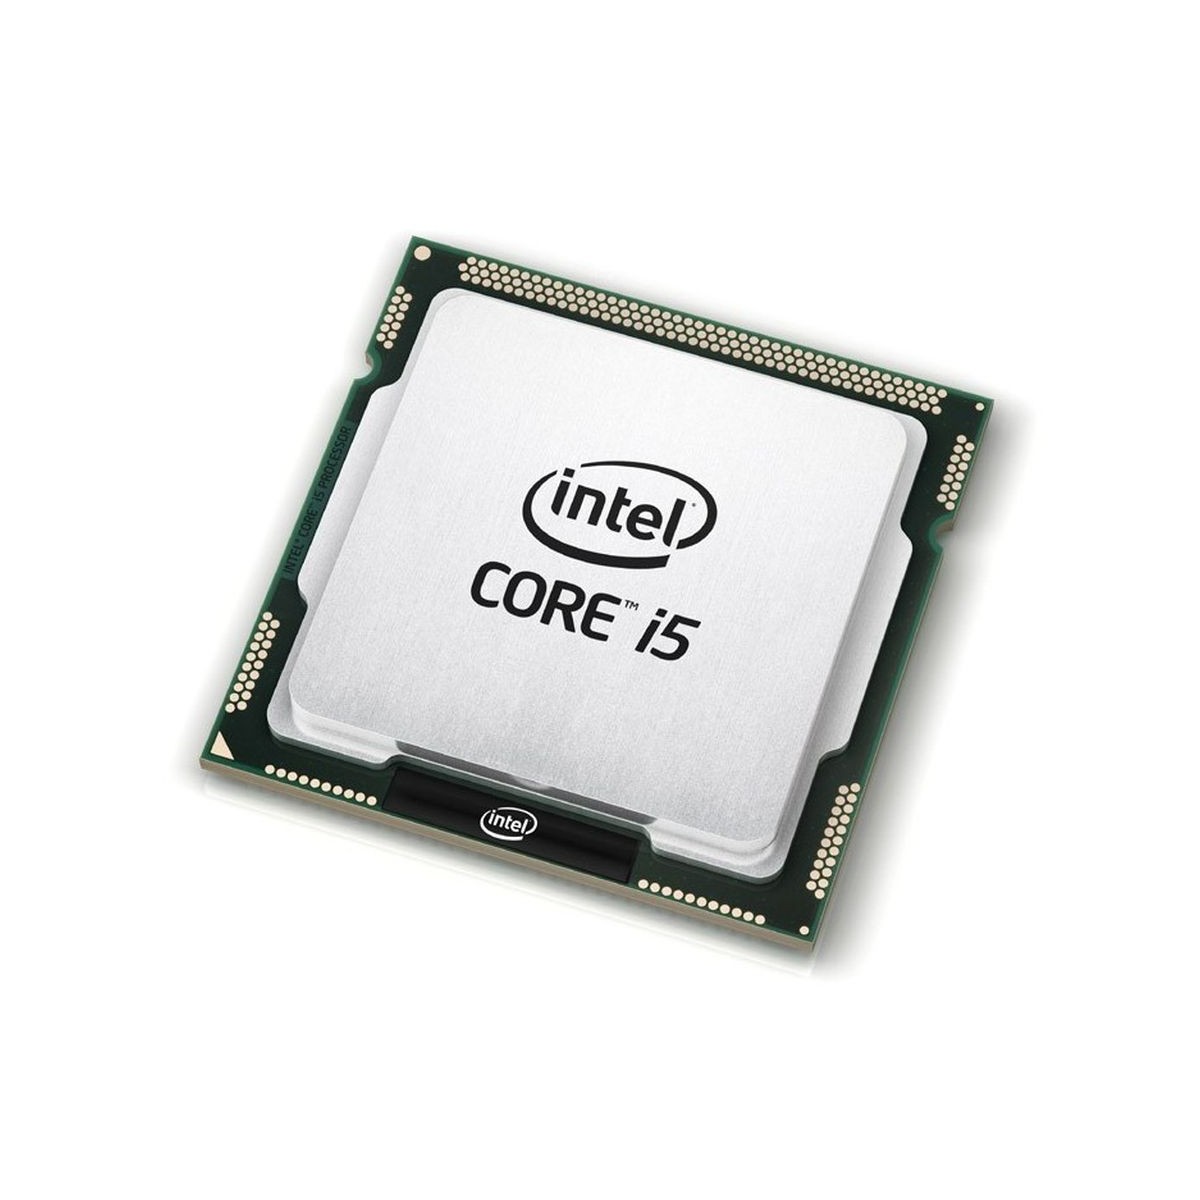 INTEL CORE i5-2320 4x3.0GHz LGA1155 SR02L